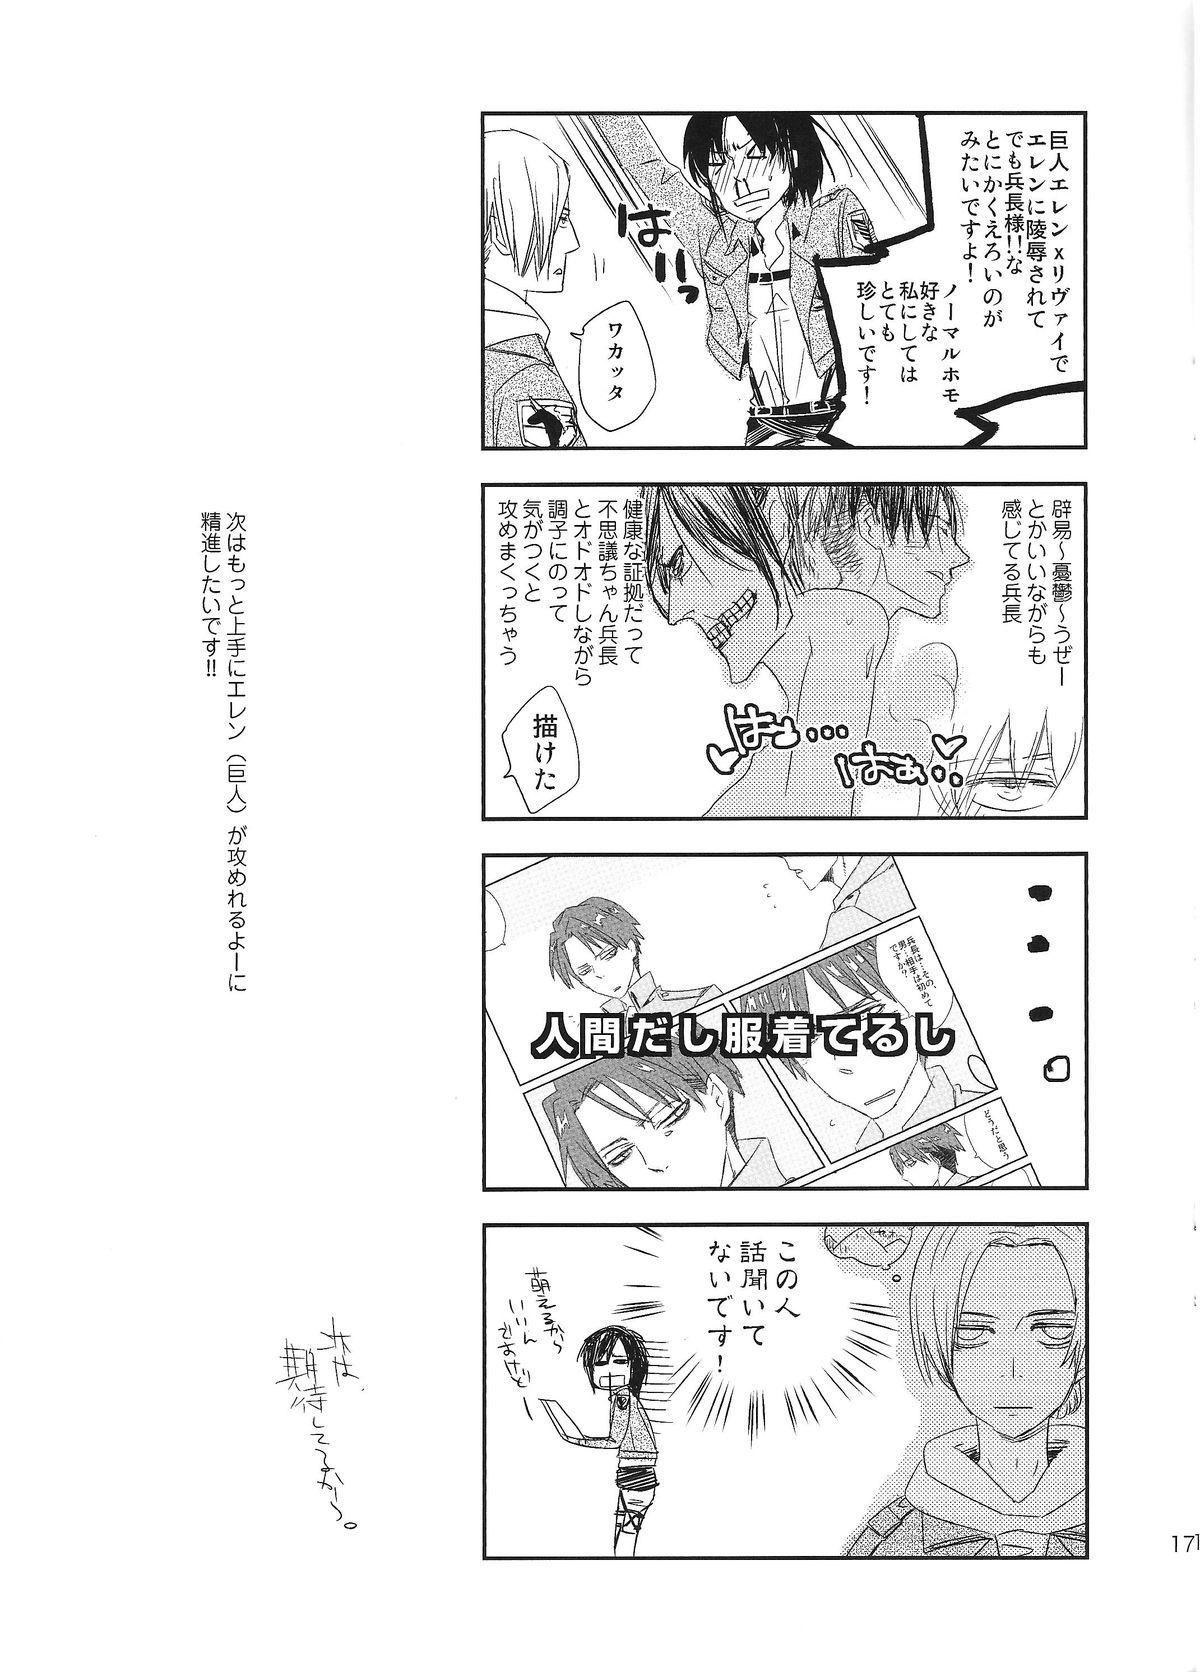 Man Kyojin to! - Shingeki no kyojin Speculum - Page 17